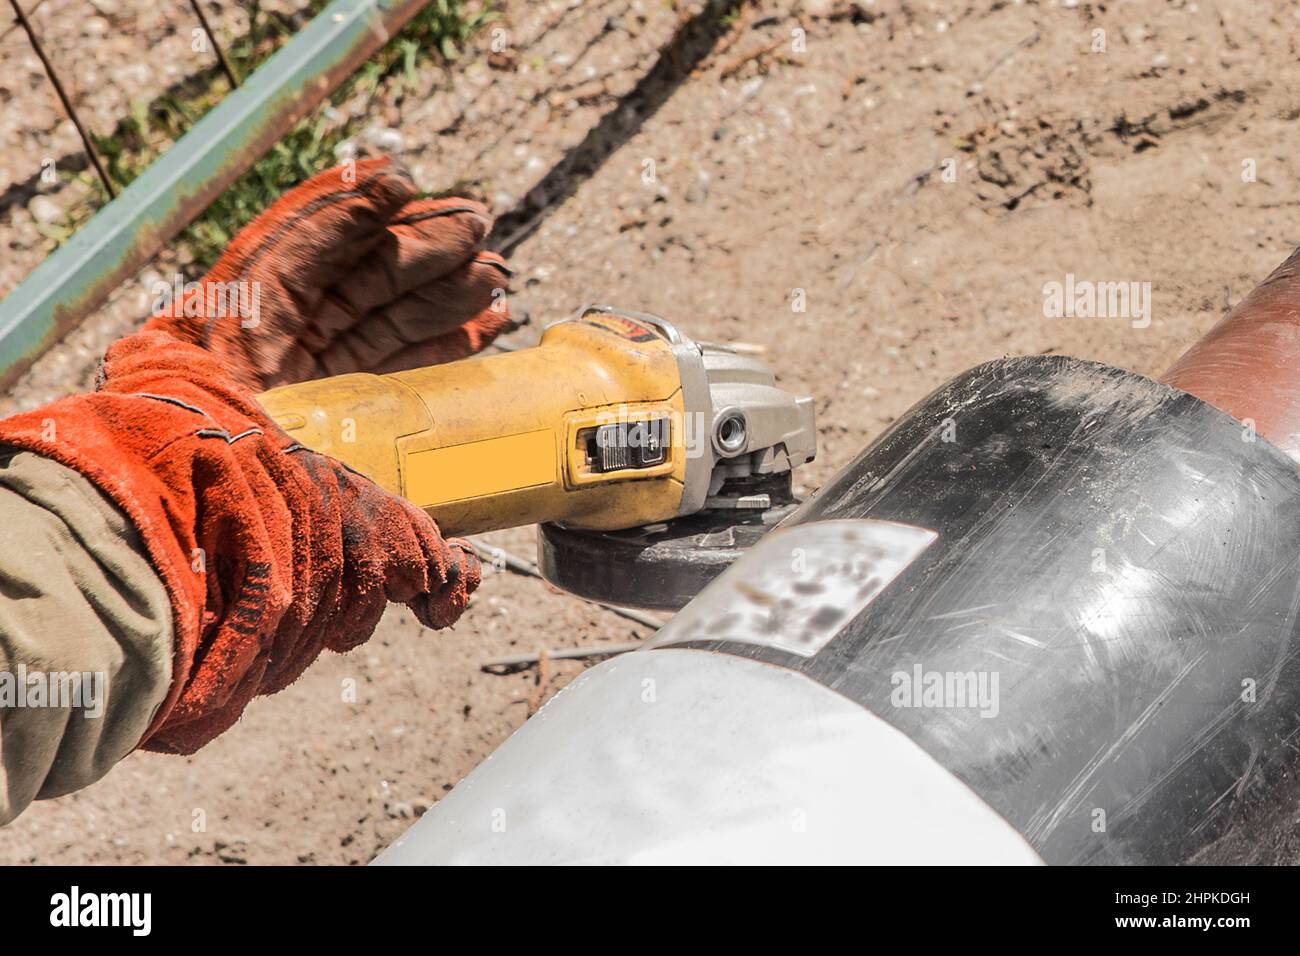 Die Hände eines Industriearbeiters in Arbeitshandschuhe verwenden ein Elektroschleifgerät an einem Polyethylen-Wasserrohr auf einer Baustelle. Stockfoto